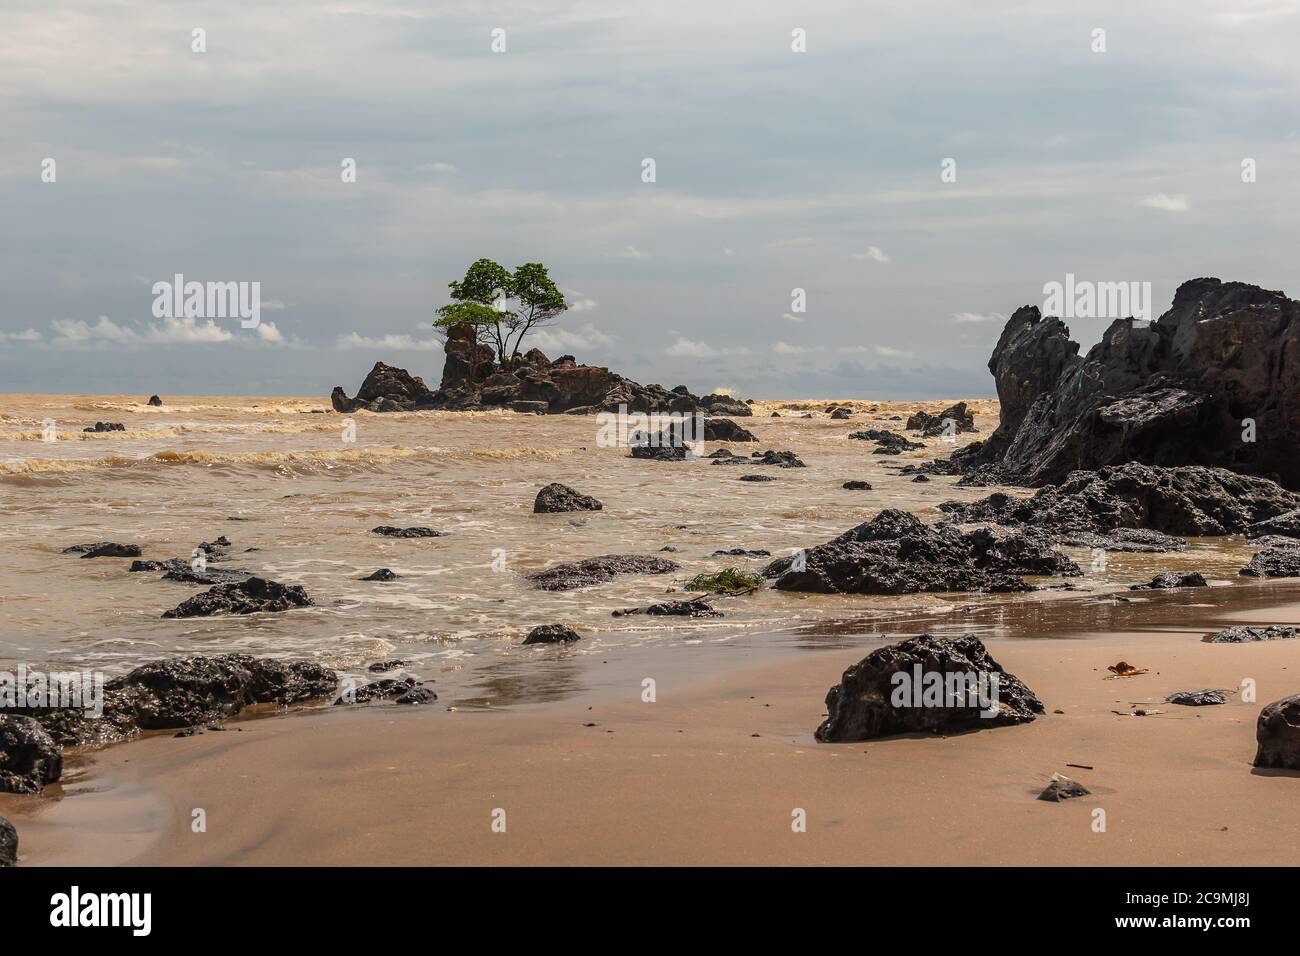 La côte d'or de l'Afrique avec la mer jaune et une île avec des roches noires où un arbre pousse dans des conditions difficiles, l'endroit est situé au Ghana Afrique de l'Ouest Banque D'Images